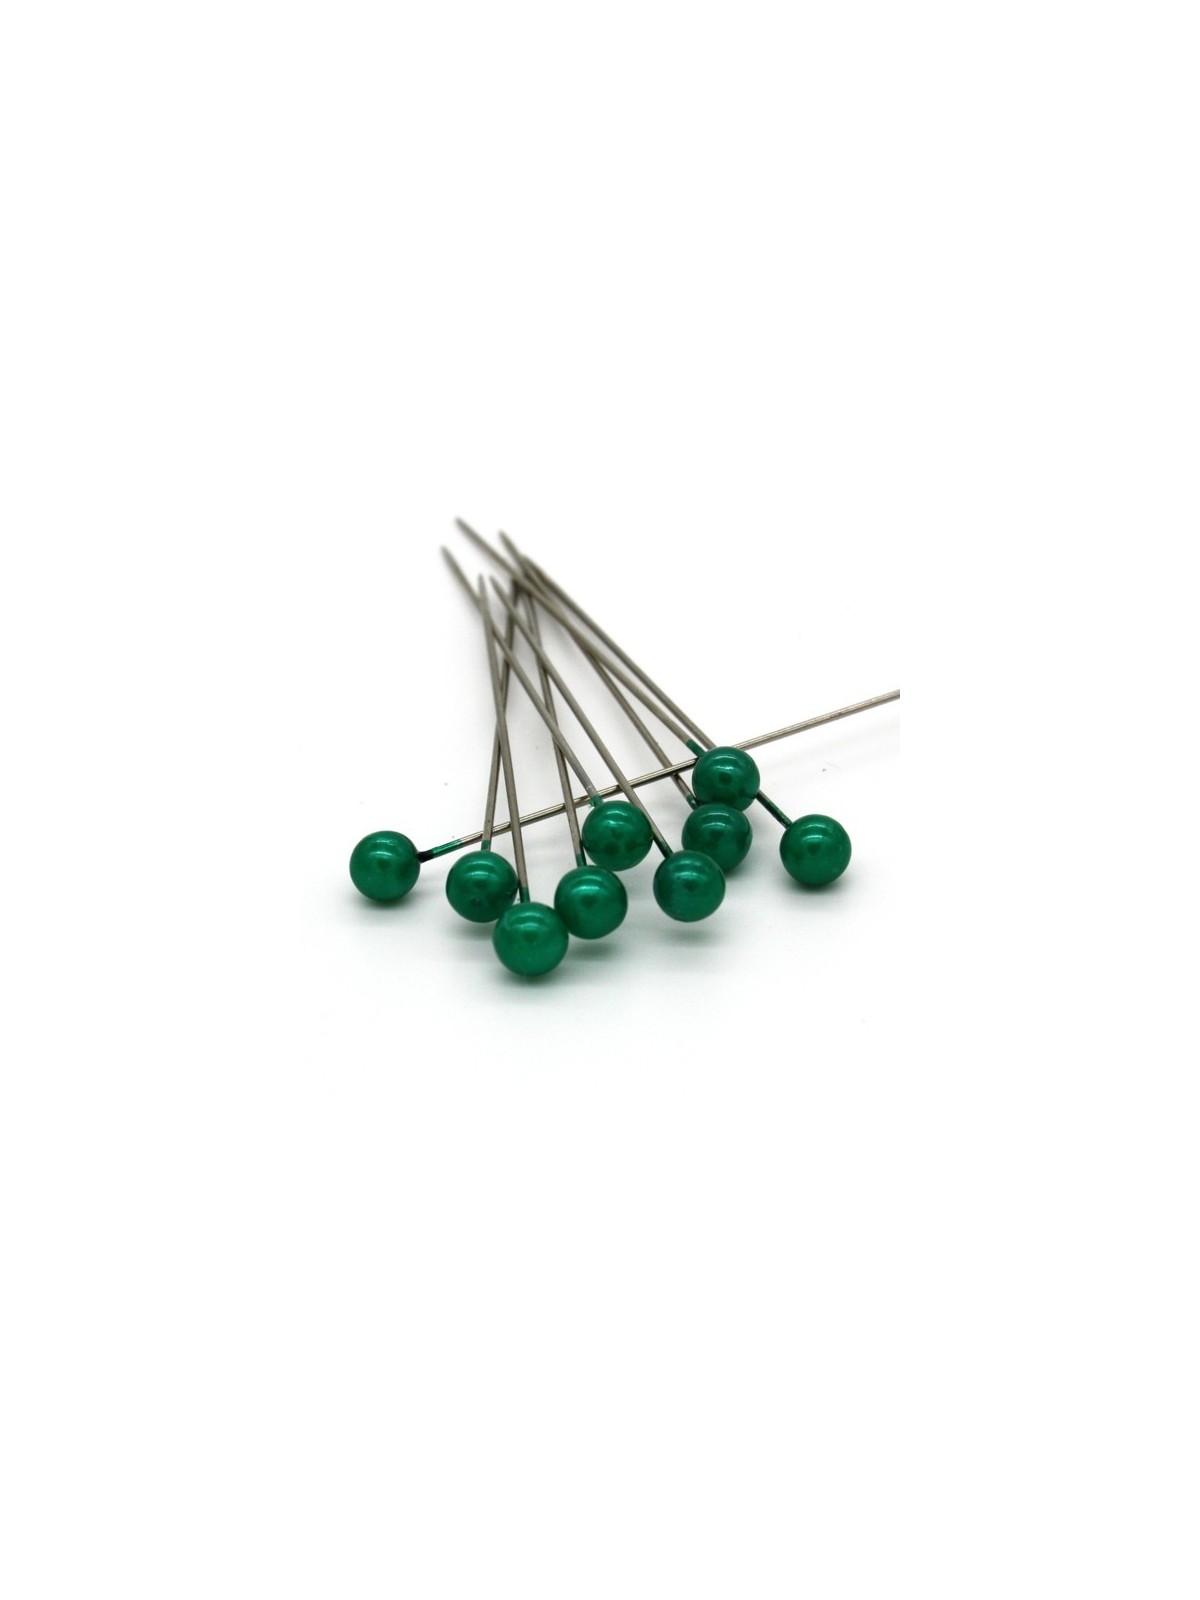 Dekorační špendlík - tmavá zelená perla - 65mm/9ks